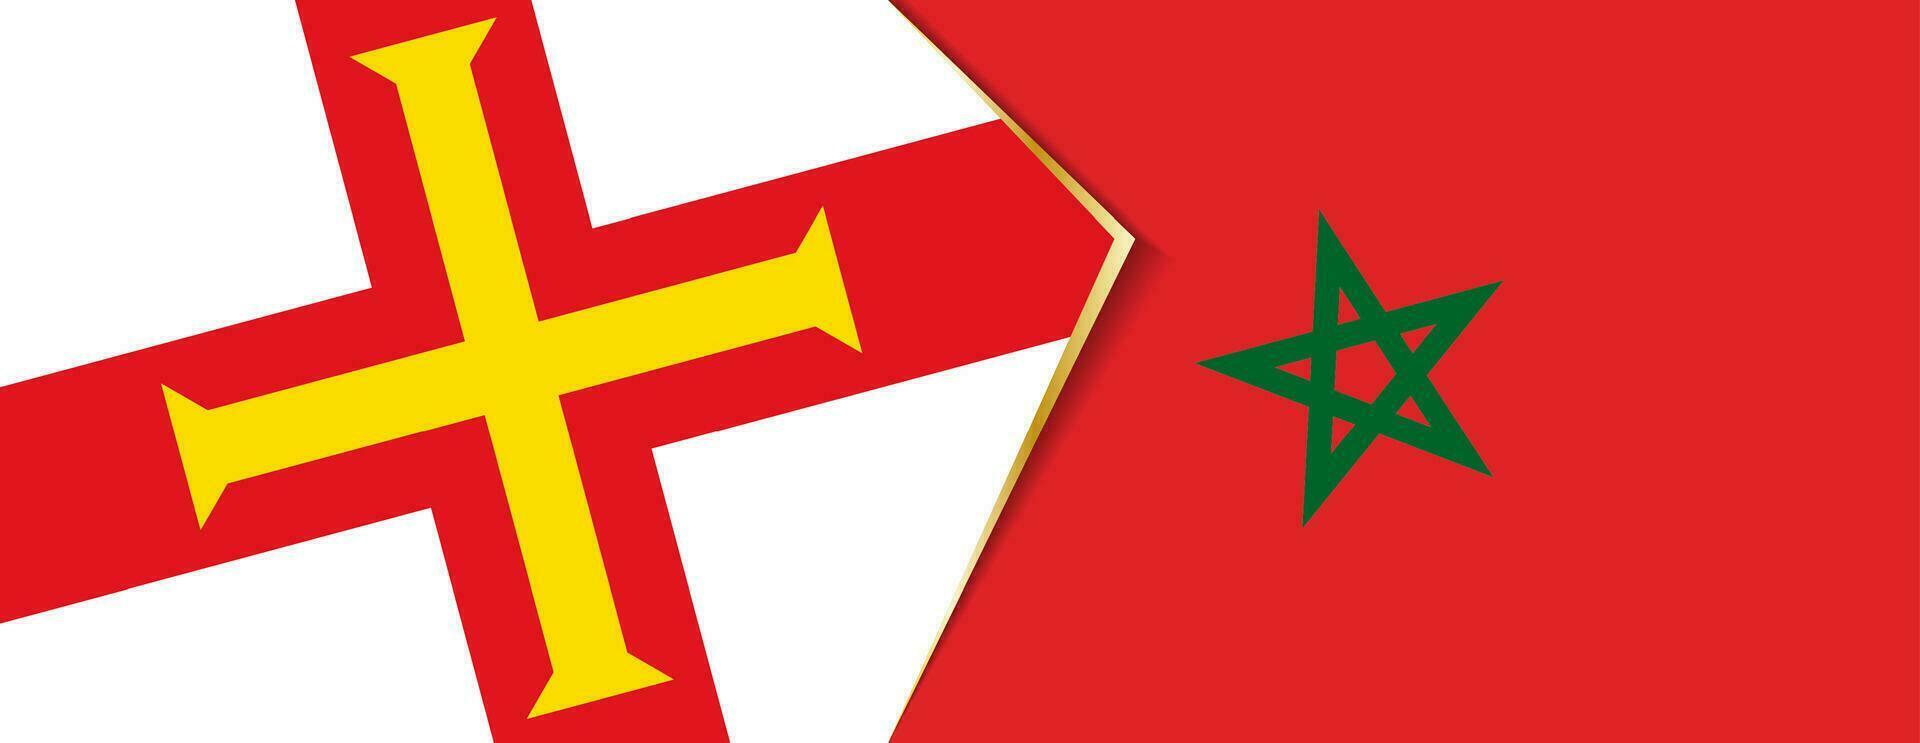 Guernsey e Marrocos bandeiras, dois vetor bandeiras.